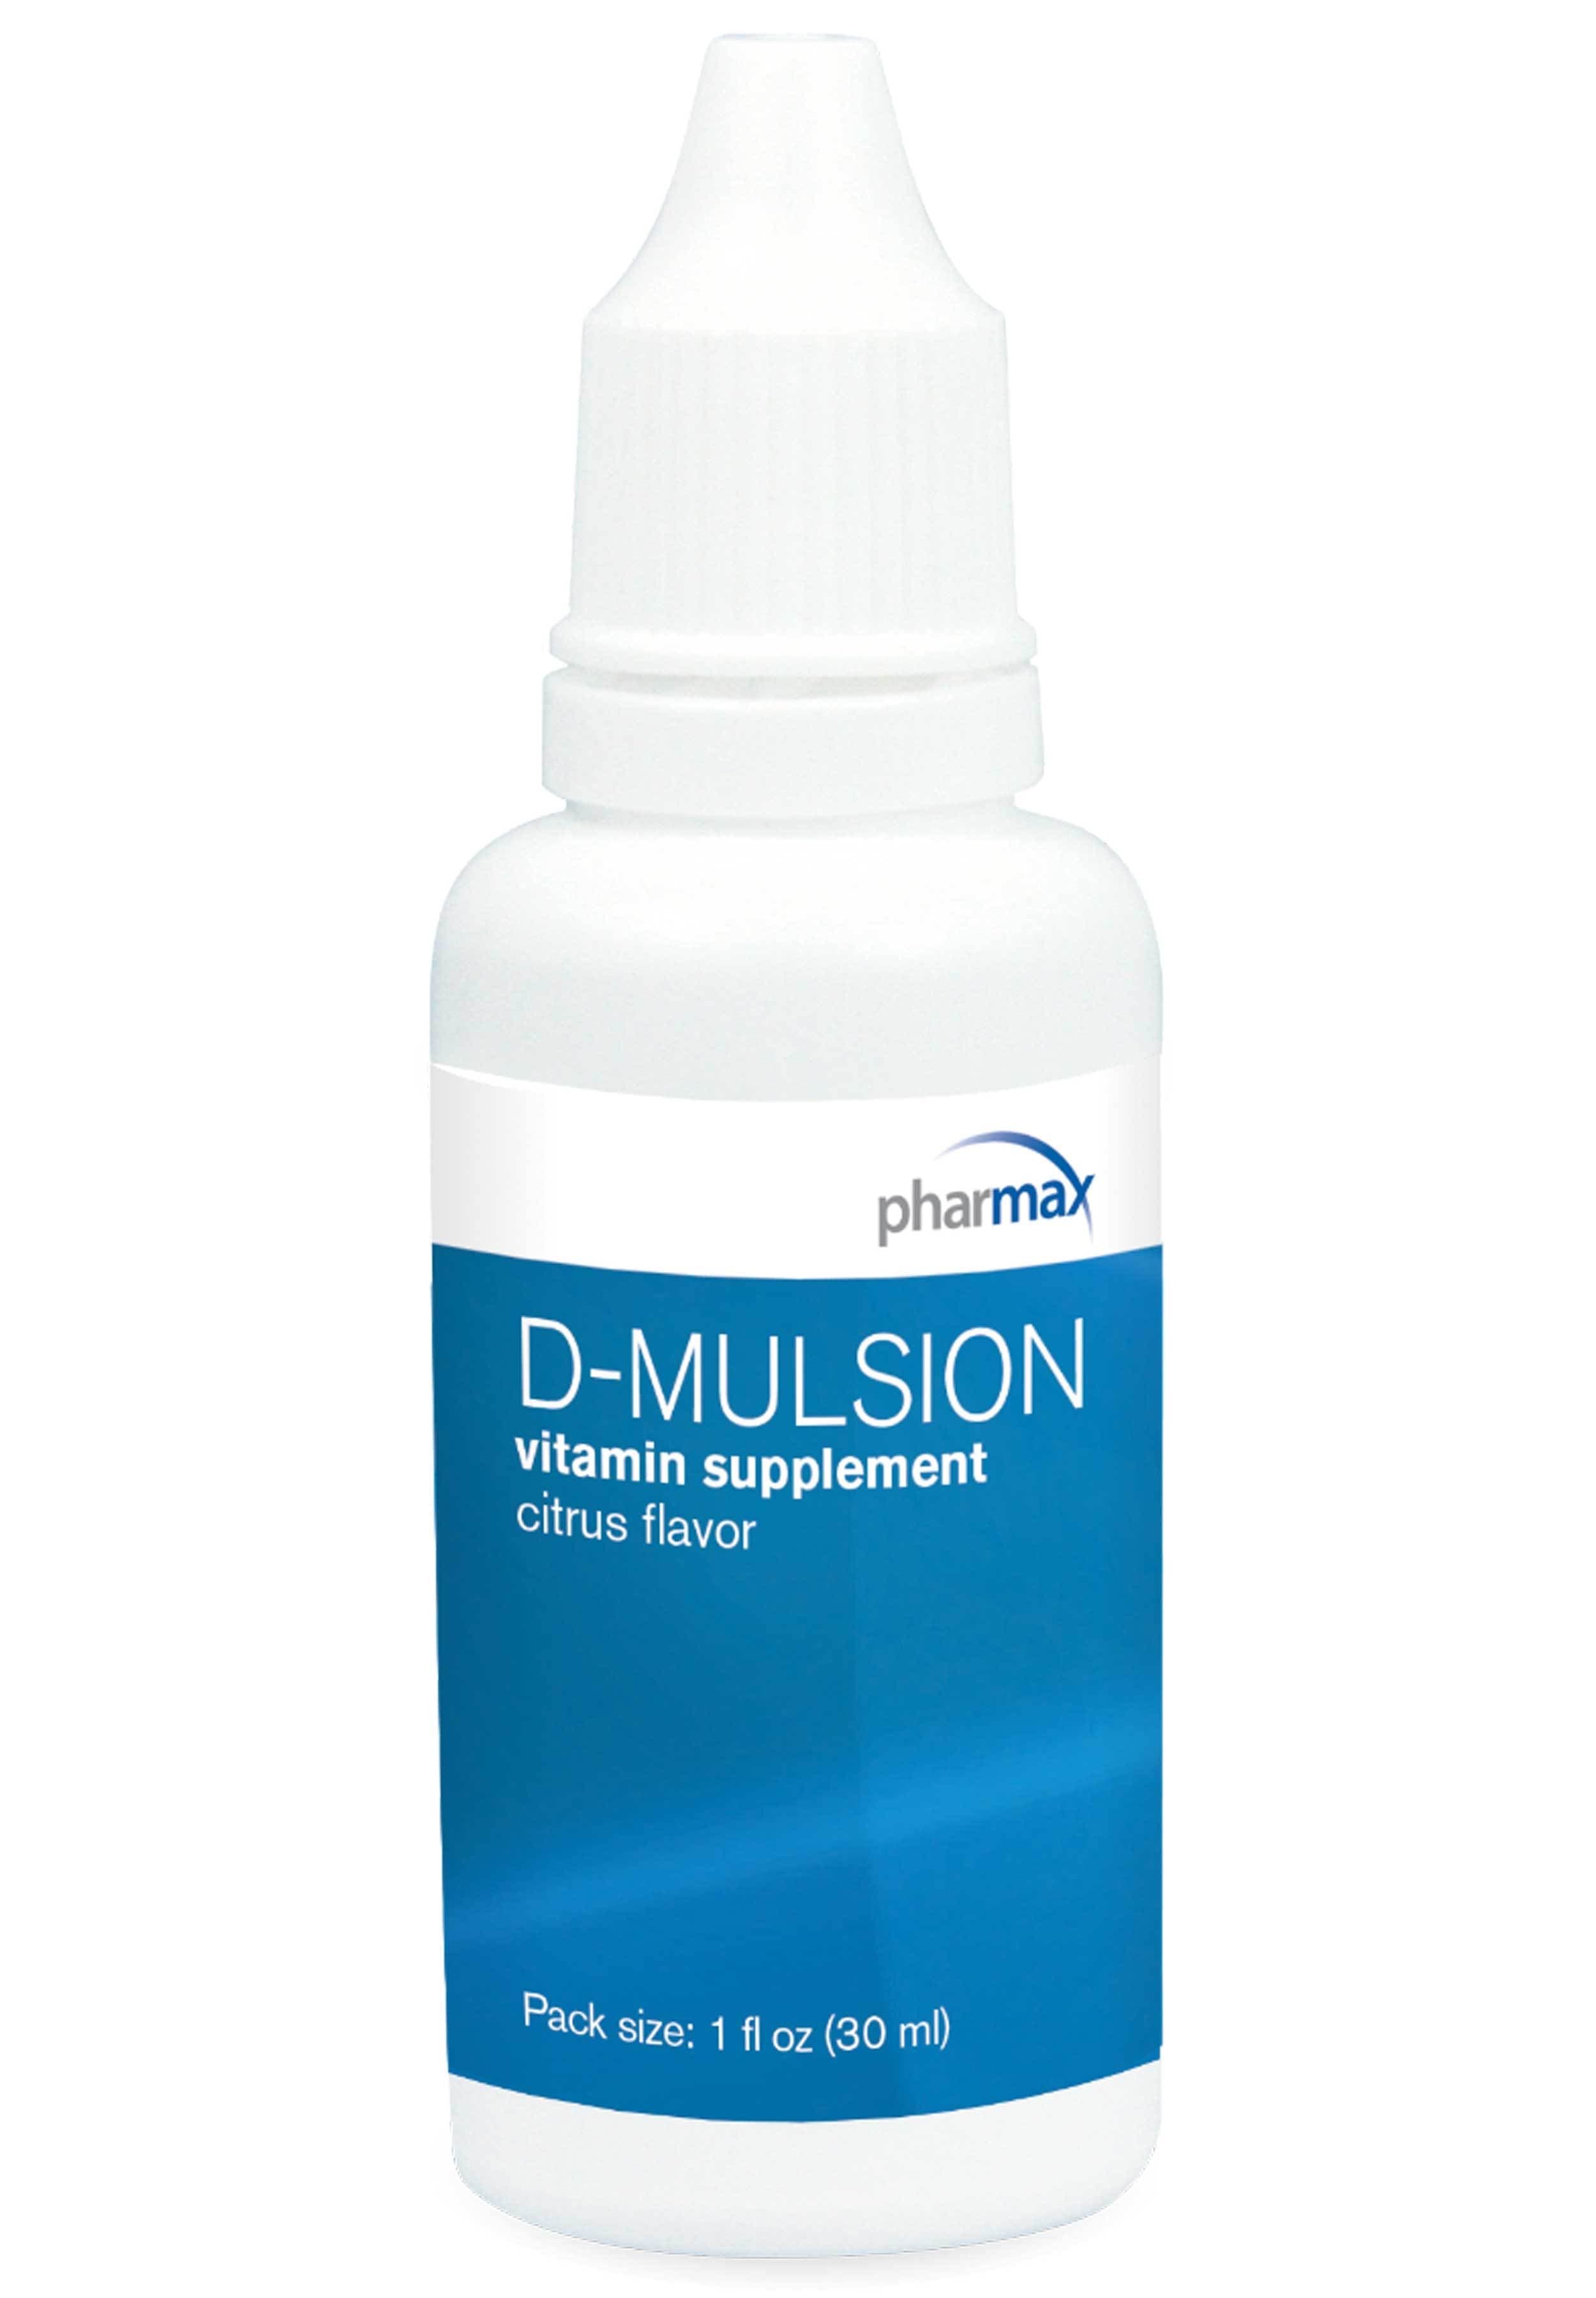 Pharmax D-Mulsion